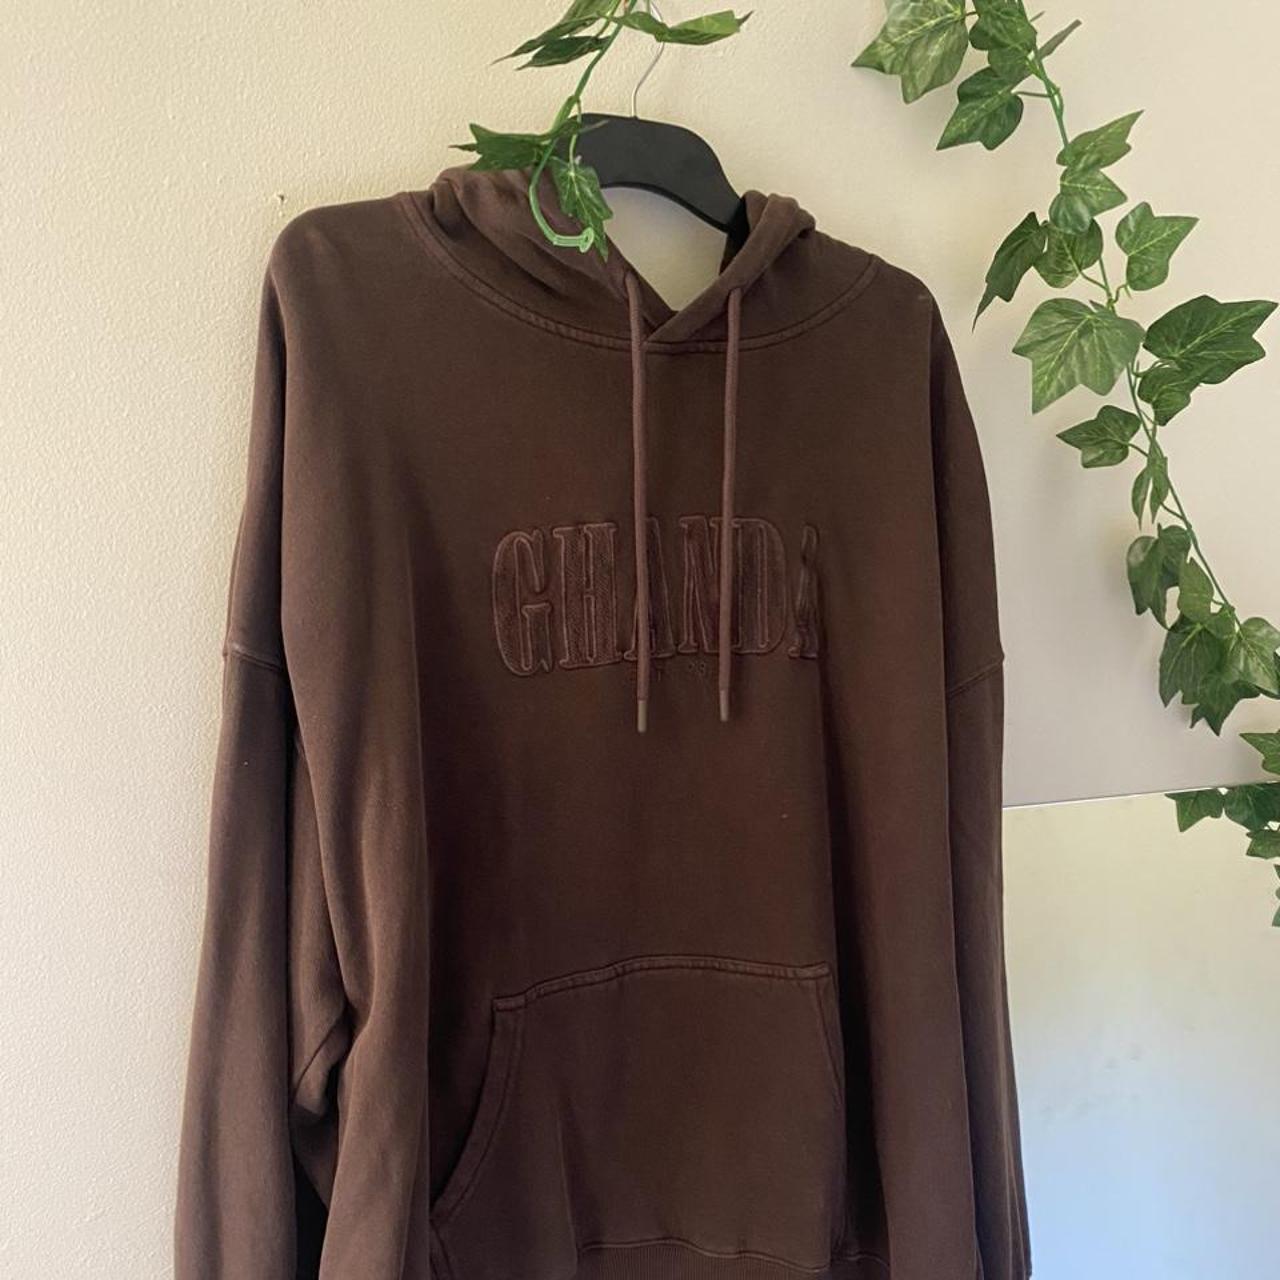 Ghanda brown hoodie size 12 - Depop